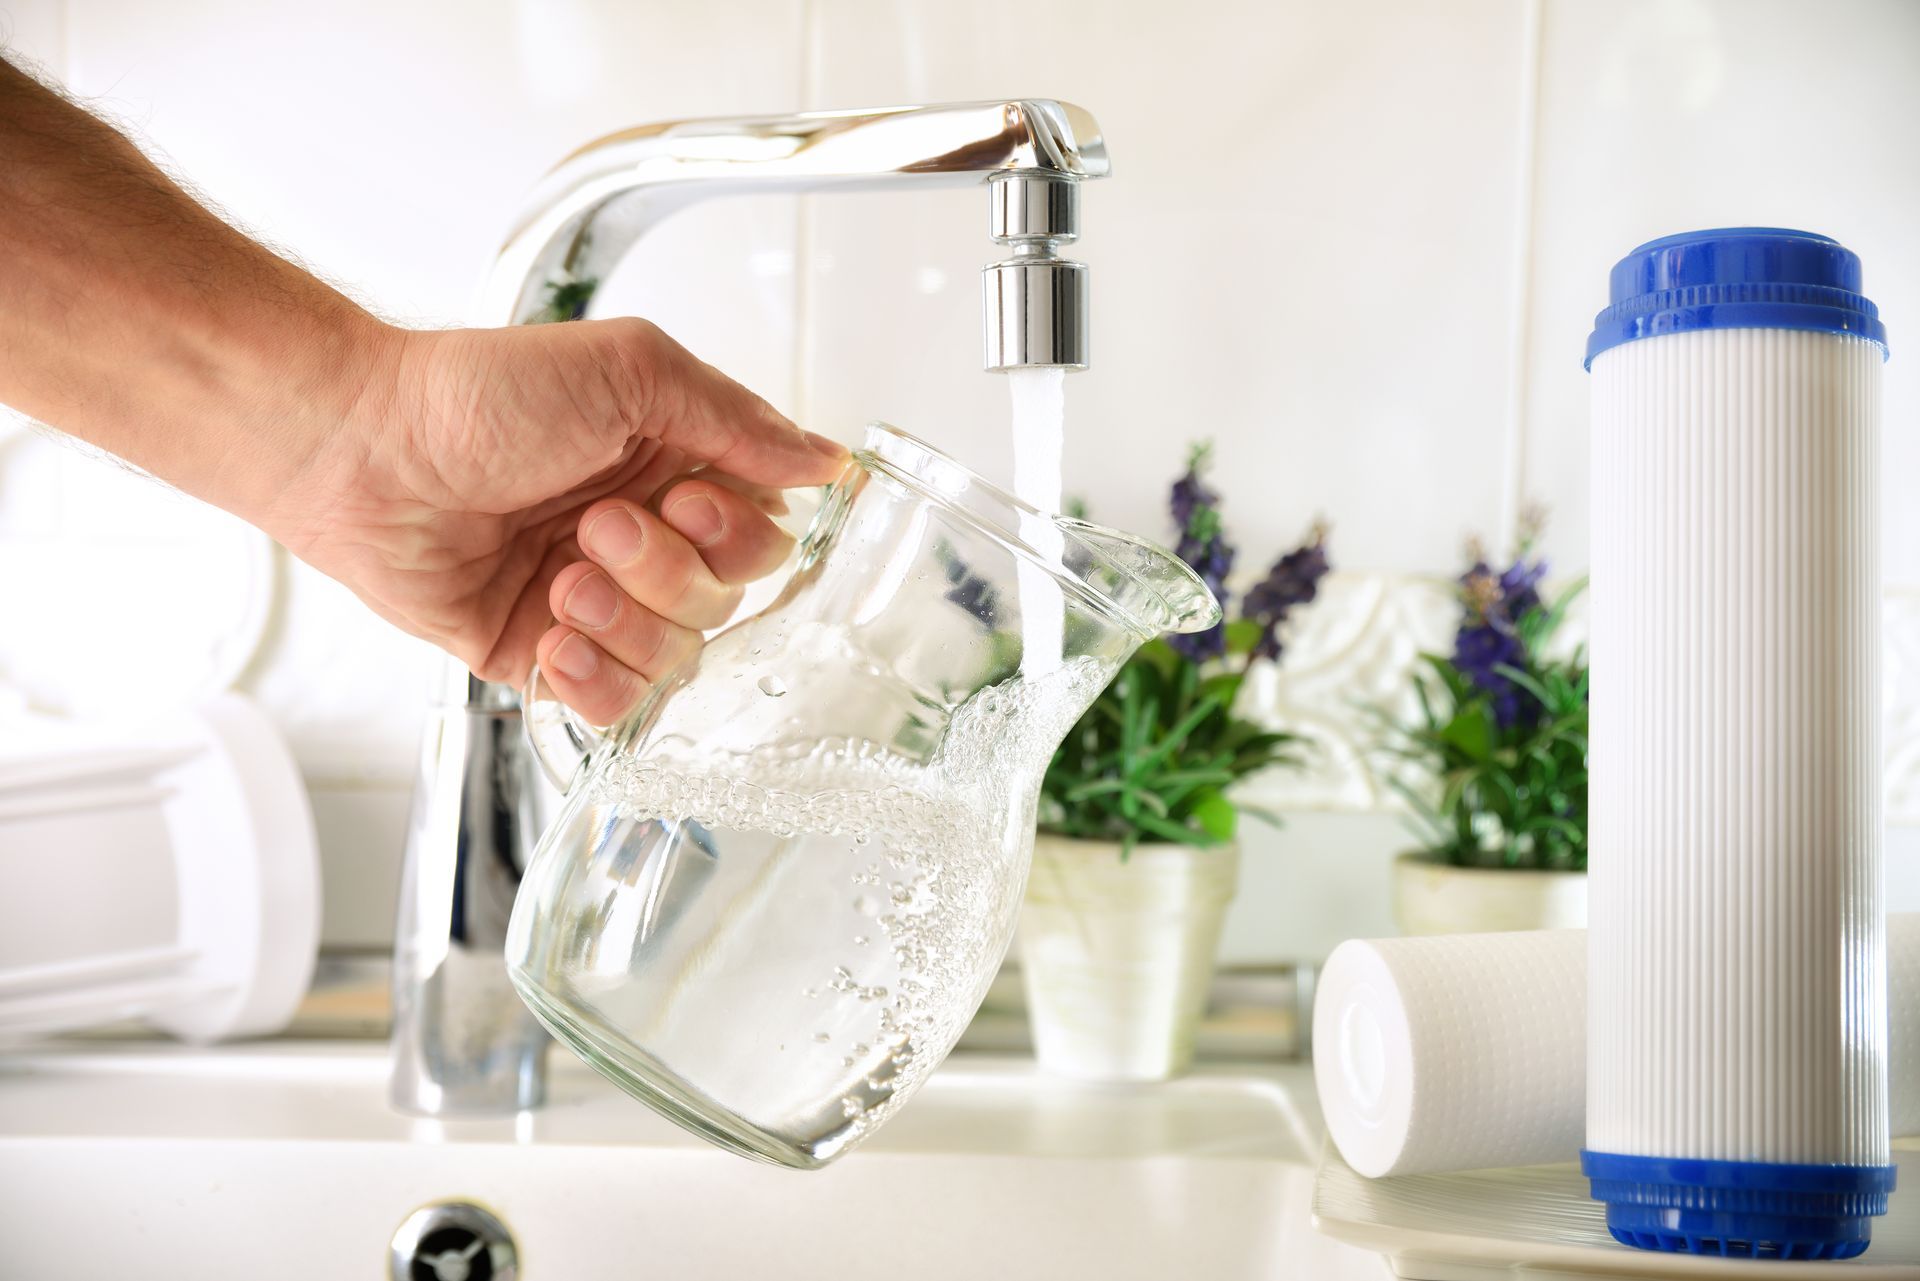 Une personne remplit une carafe d'eau du robinet filtrée